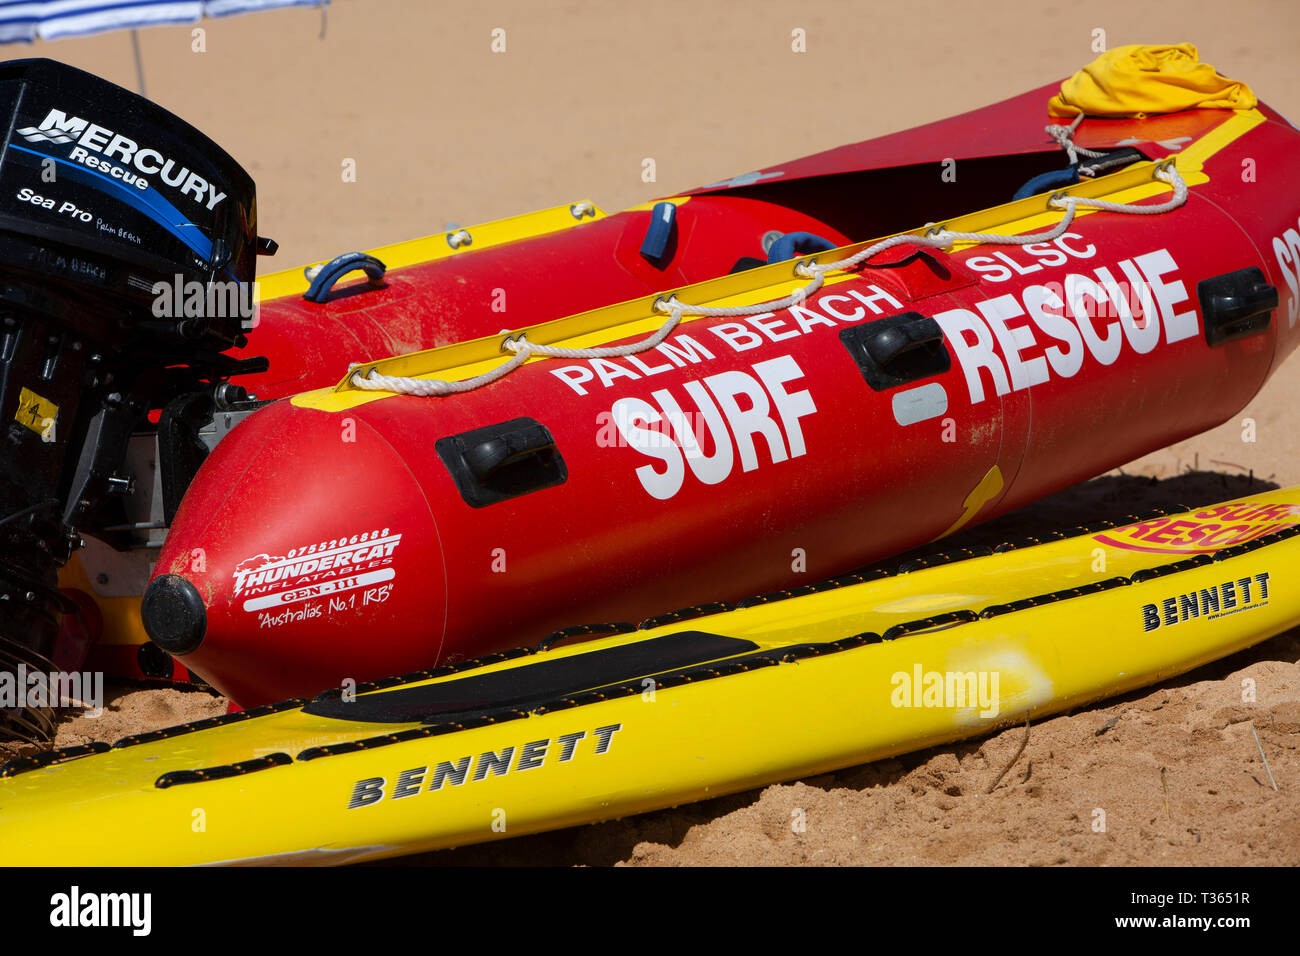 L'équipement de sauvetage de Surf lifeguard y compris annexe avec moteur hors-bord et des planches sur Palm Beach, Sydney, Australie Banque D'Images